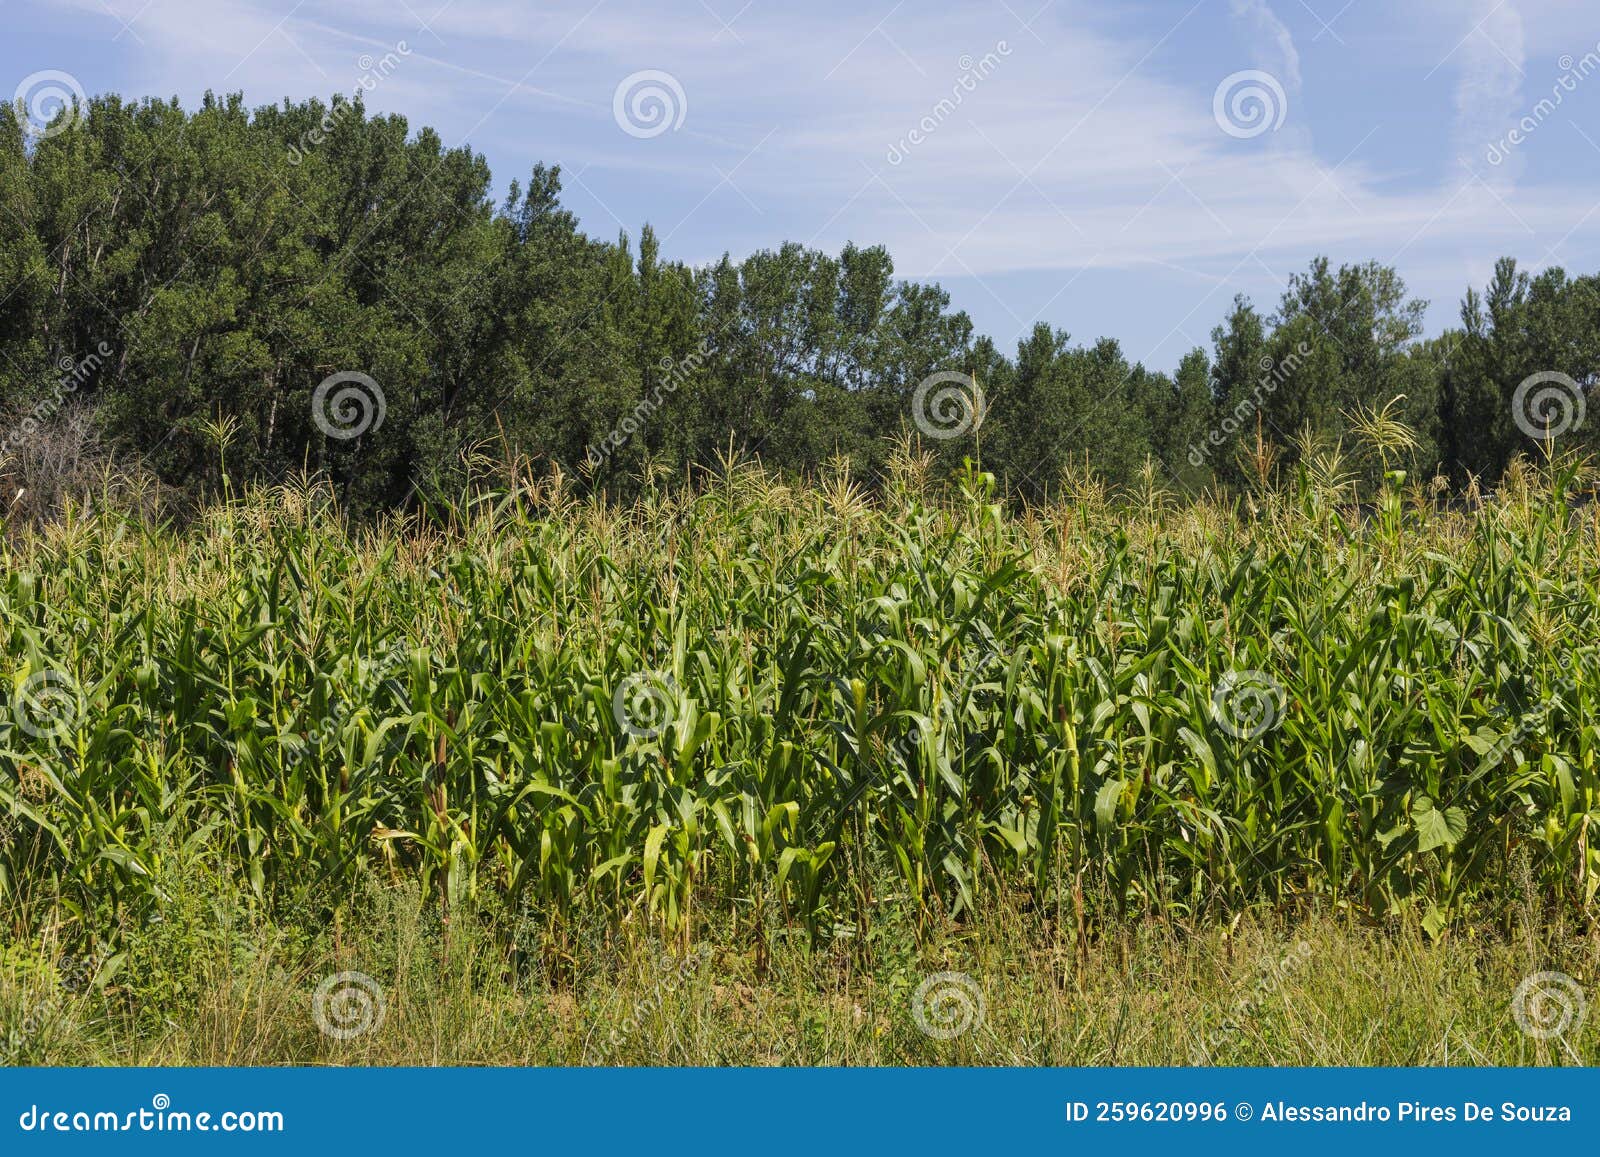 corn field along the camino de santiago, spain.